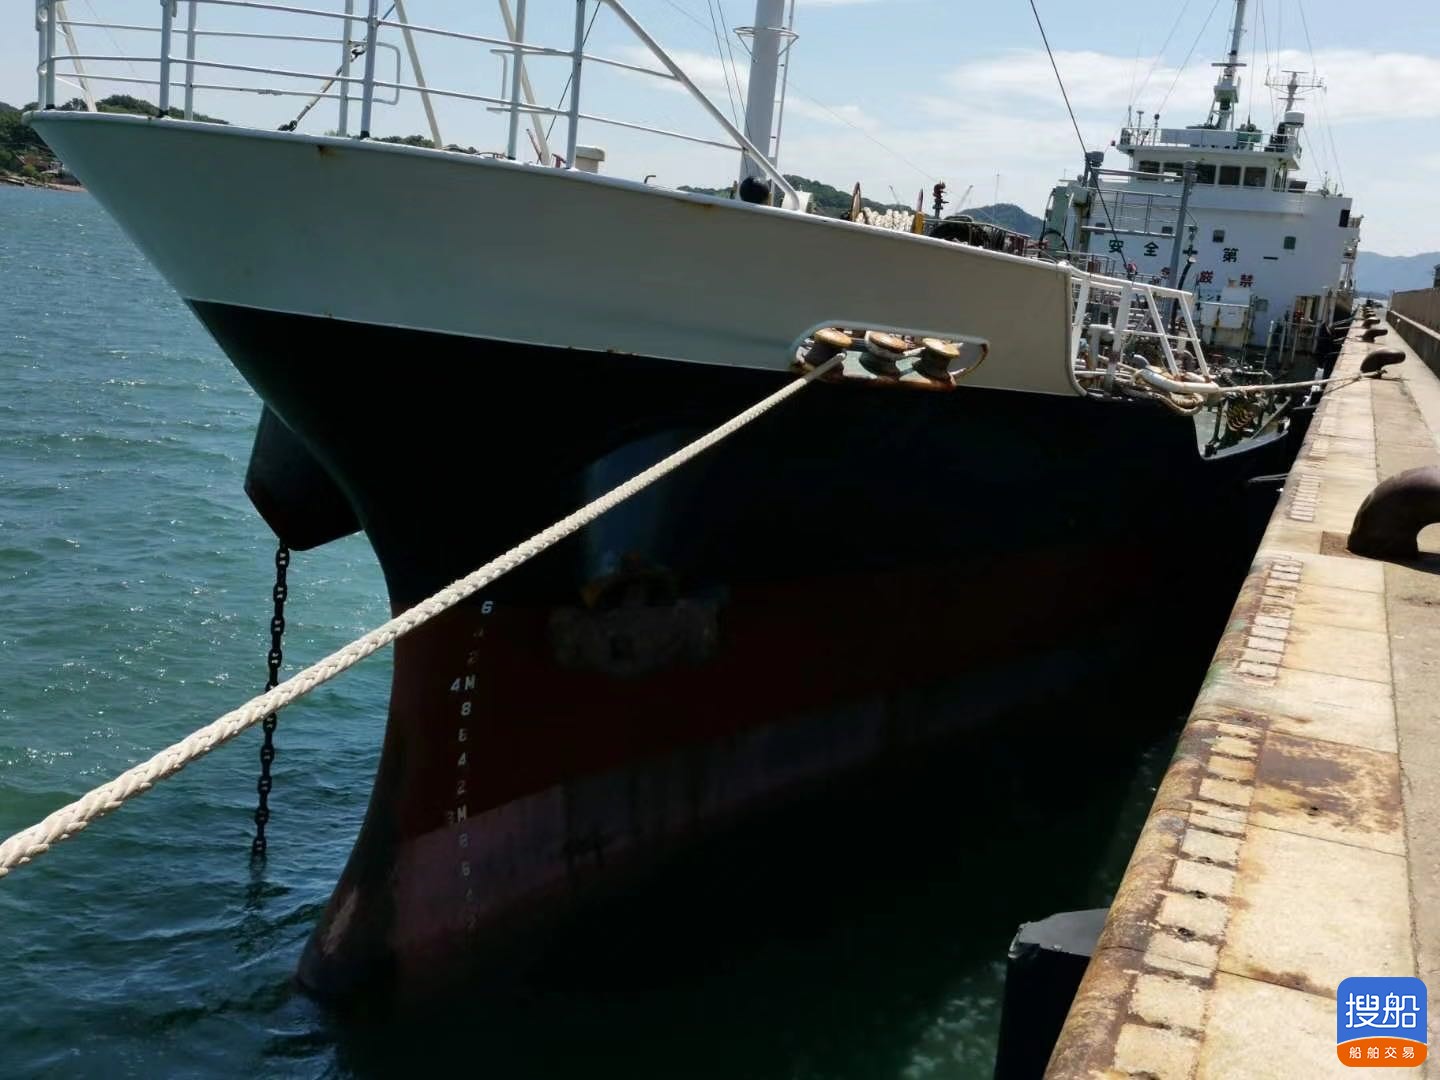 出售93年1200吨不锈钢双壳油船